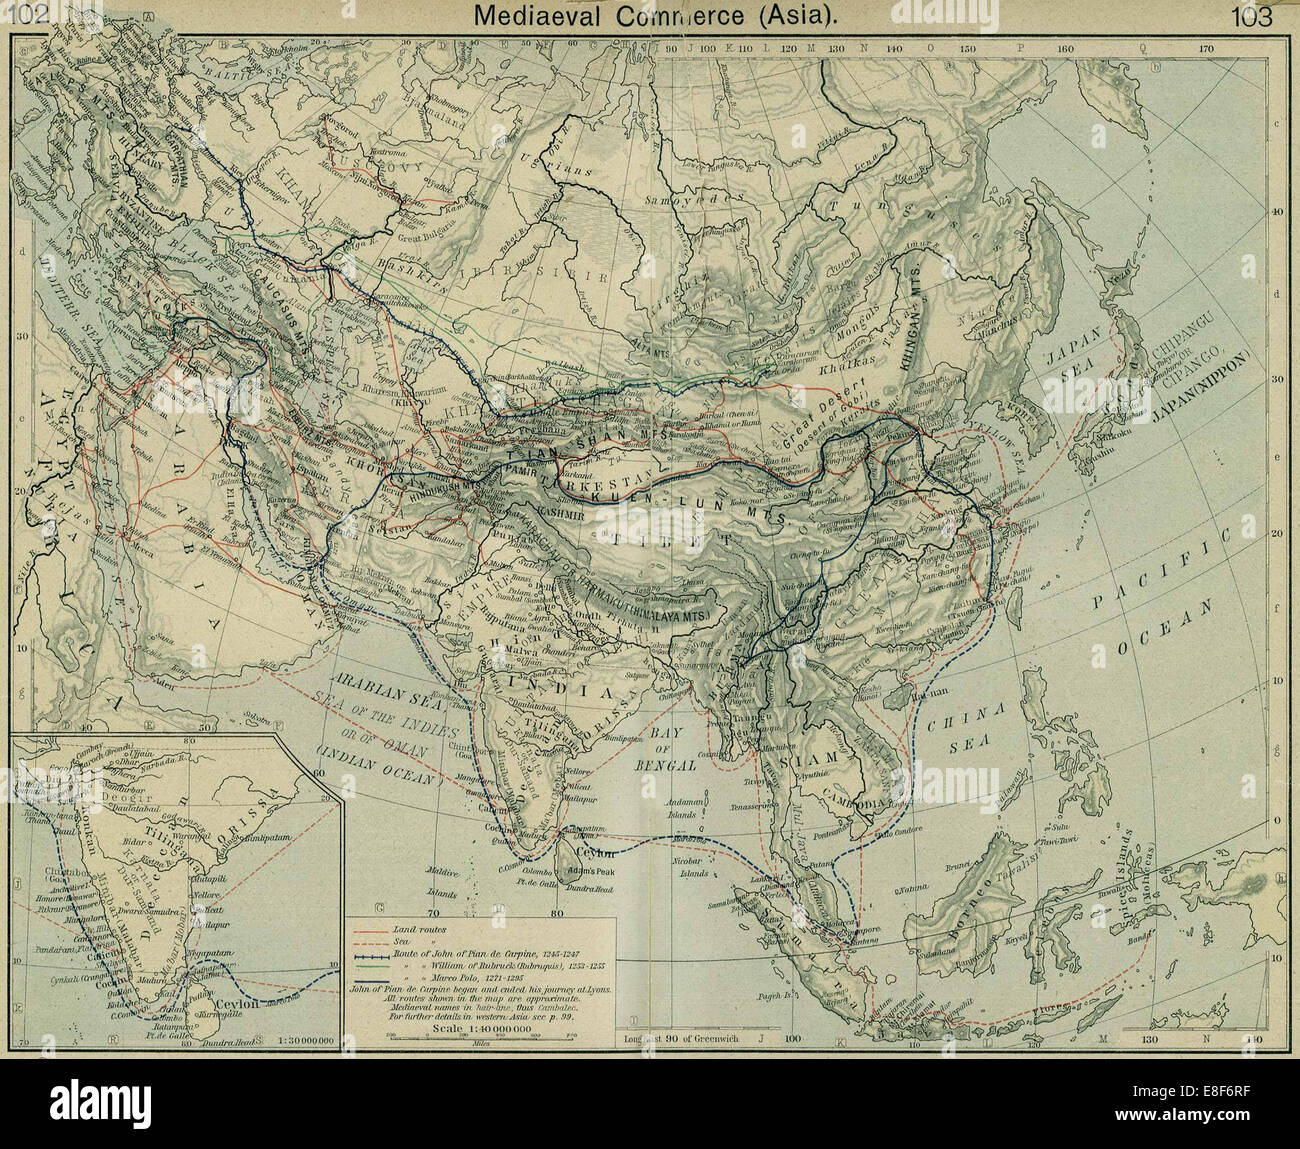 Cité médiévale du commerce (Asie). De l'Atlas historique. Artiste : Berger, William Robert (1871-1934) Banque D'Images